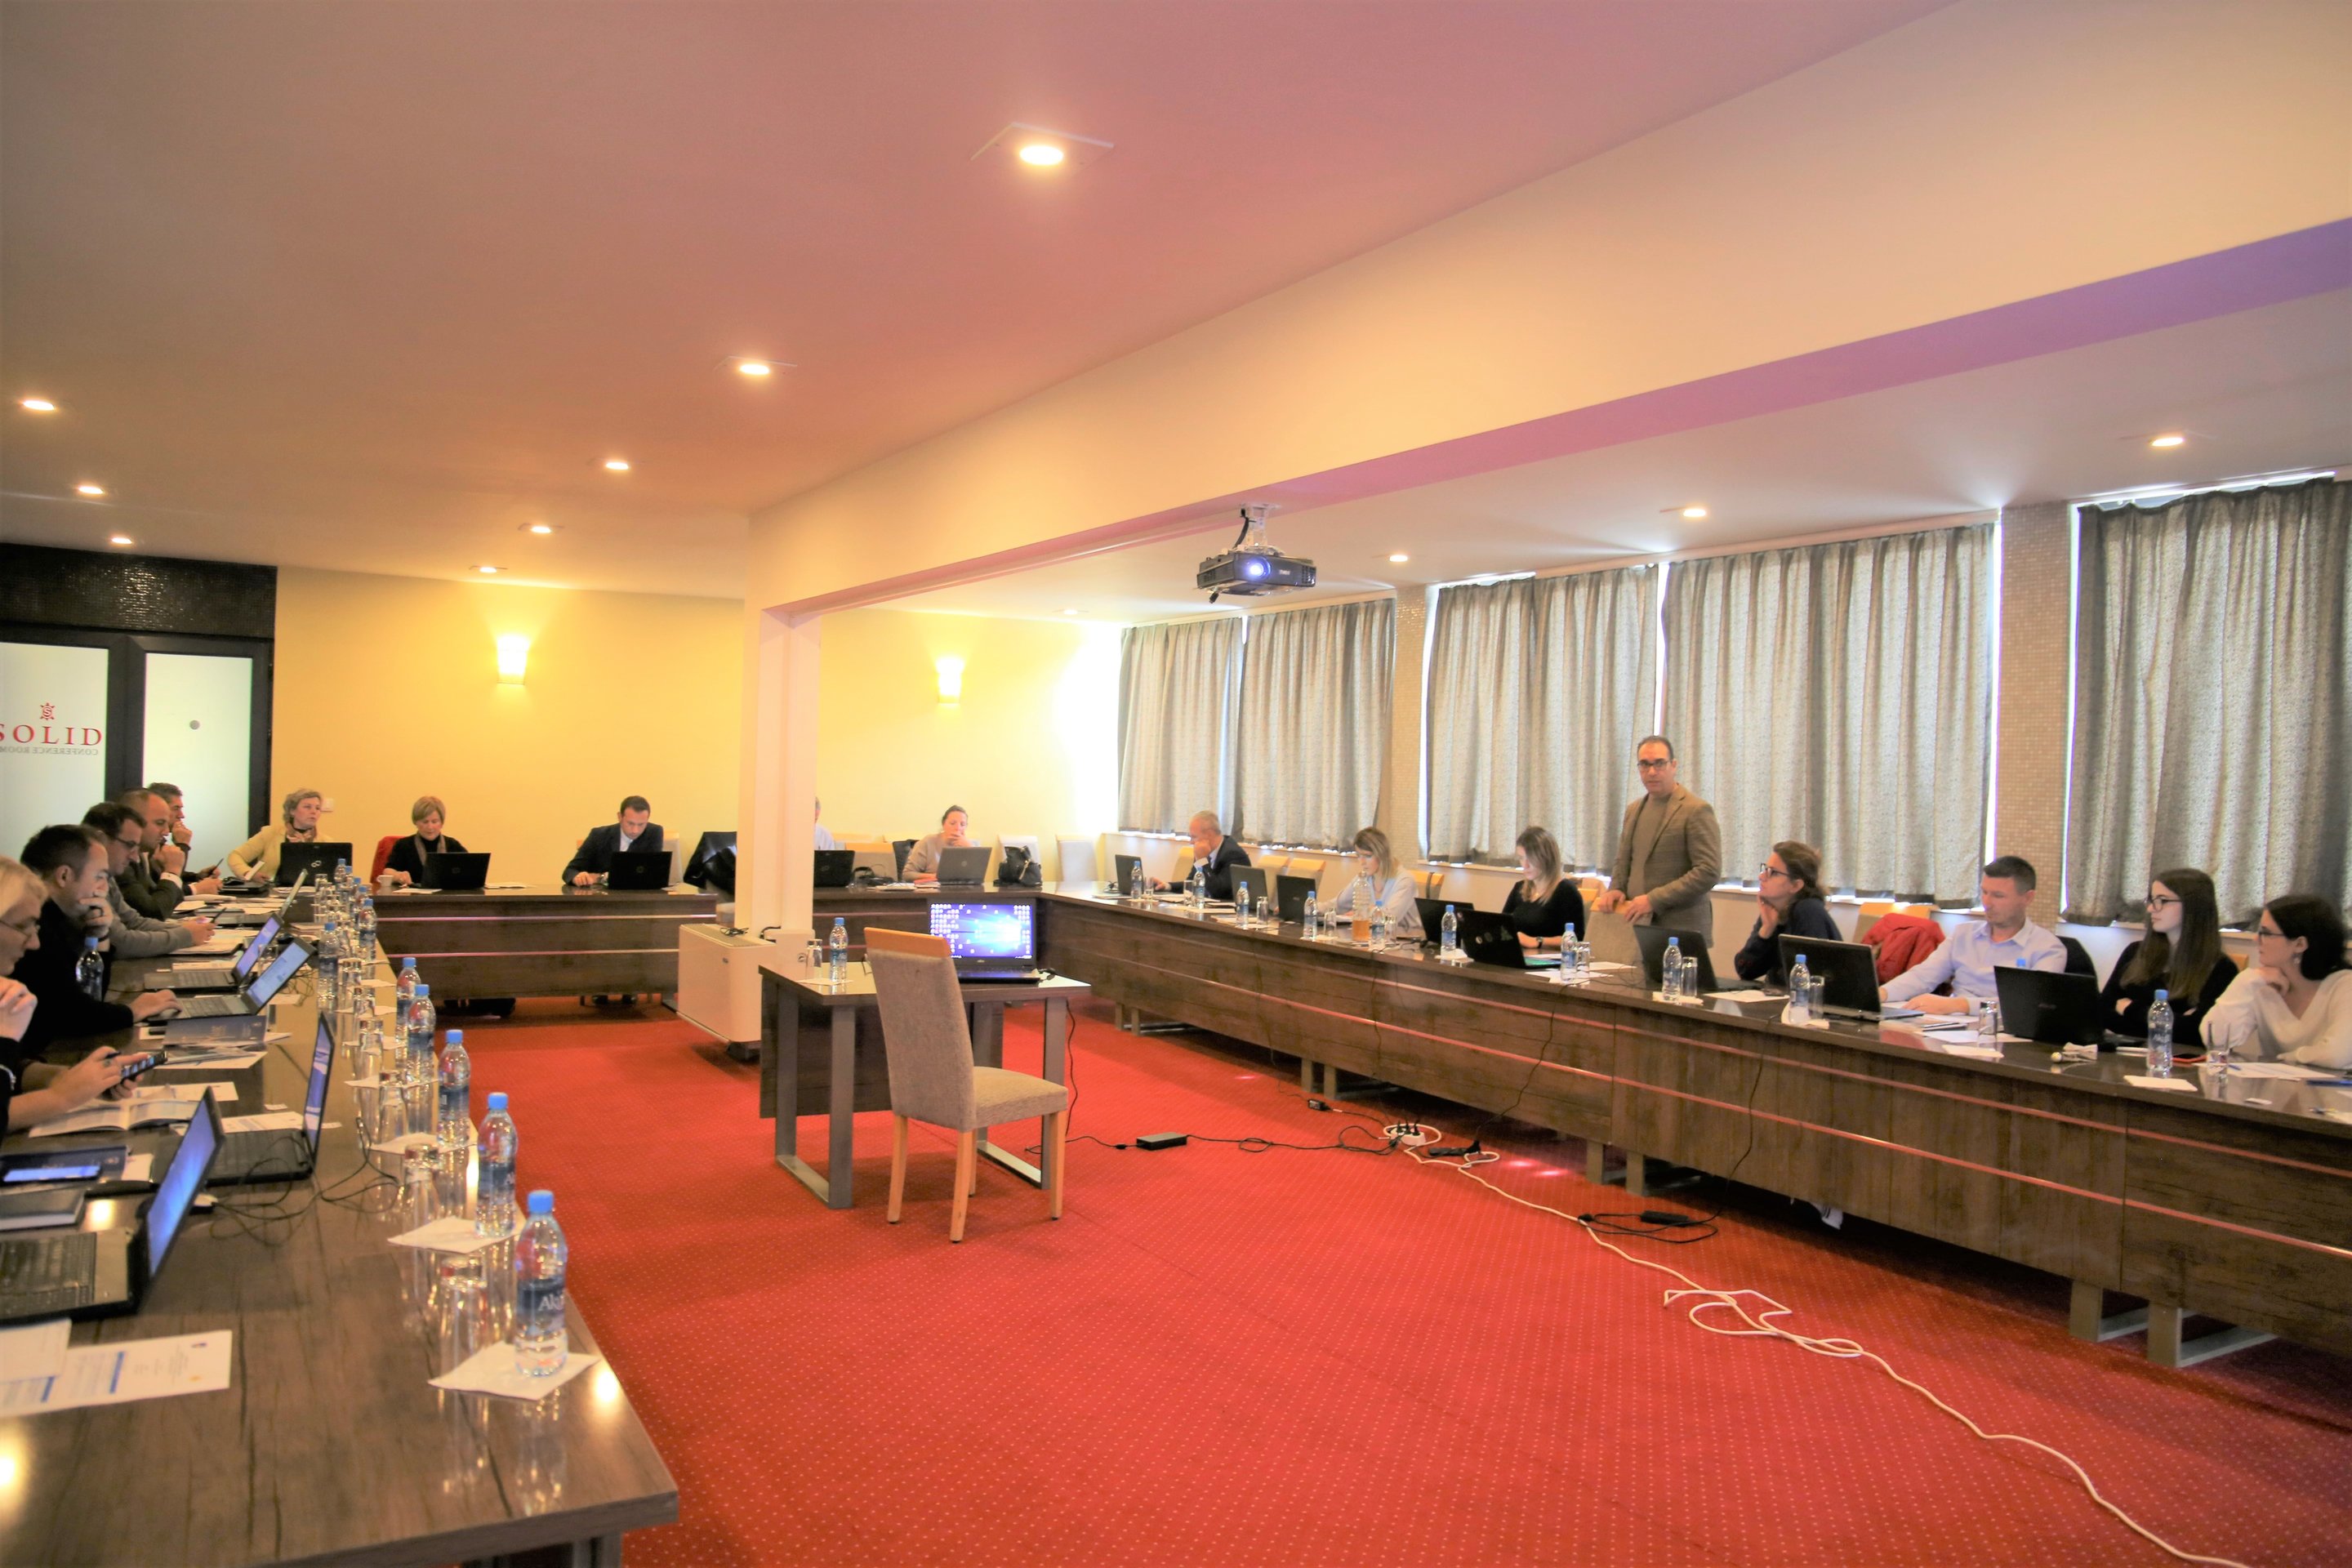 Drejtori i Përgjithshëm, Krasniqi: Menaxhimi i llogaridhënies, në fokus të shtuar të angazhimeve të administratës për vitin 2020